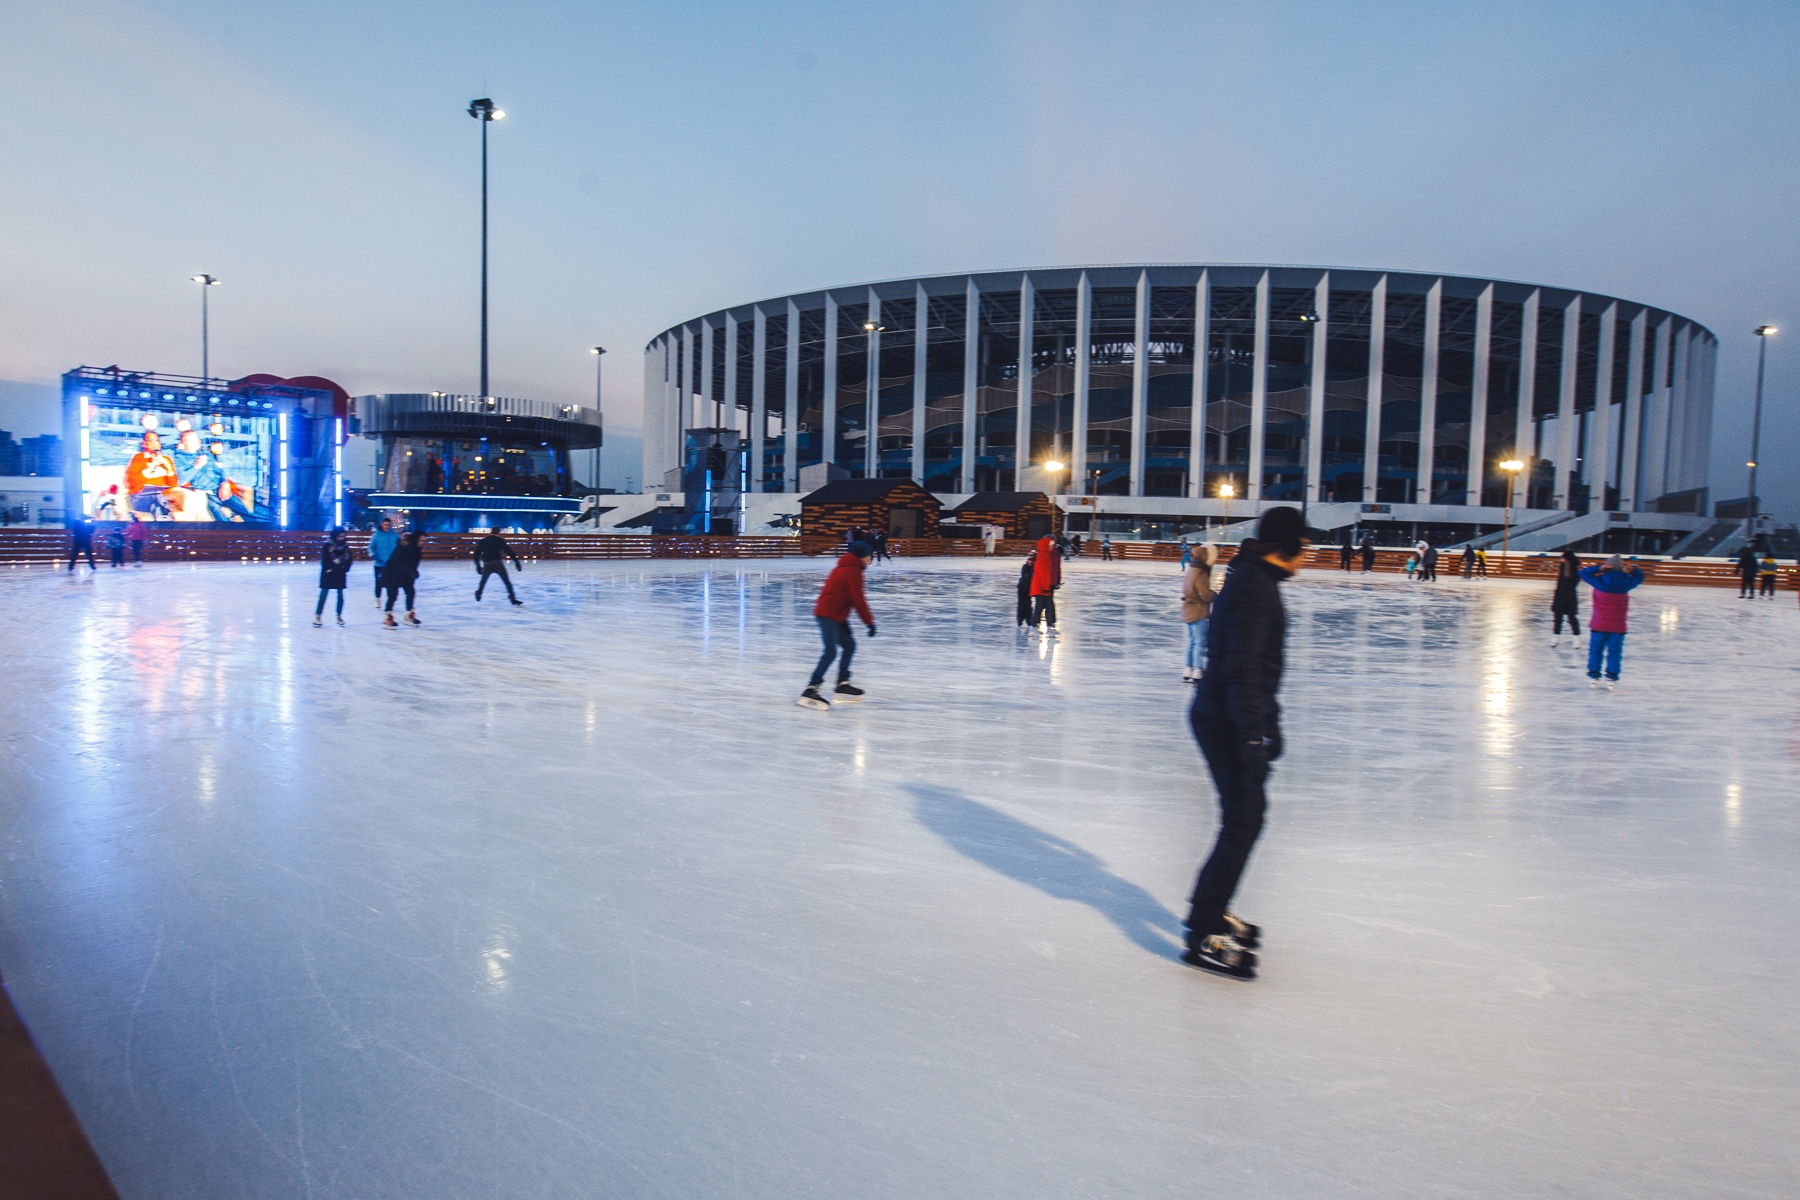 Каток откроется на территории стадиона «Нижний Новгород» 25 декабря